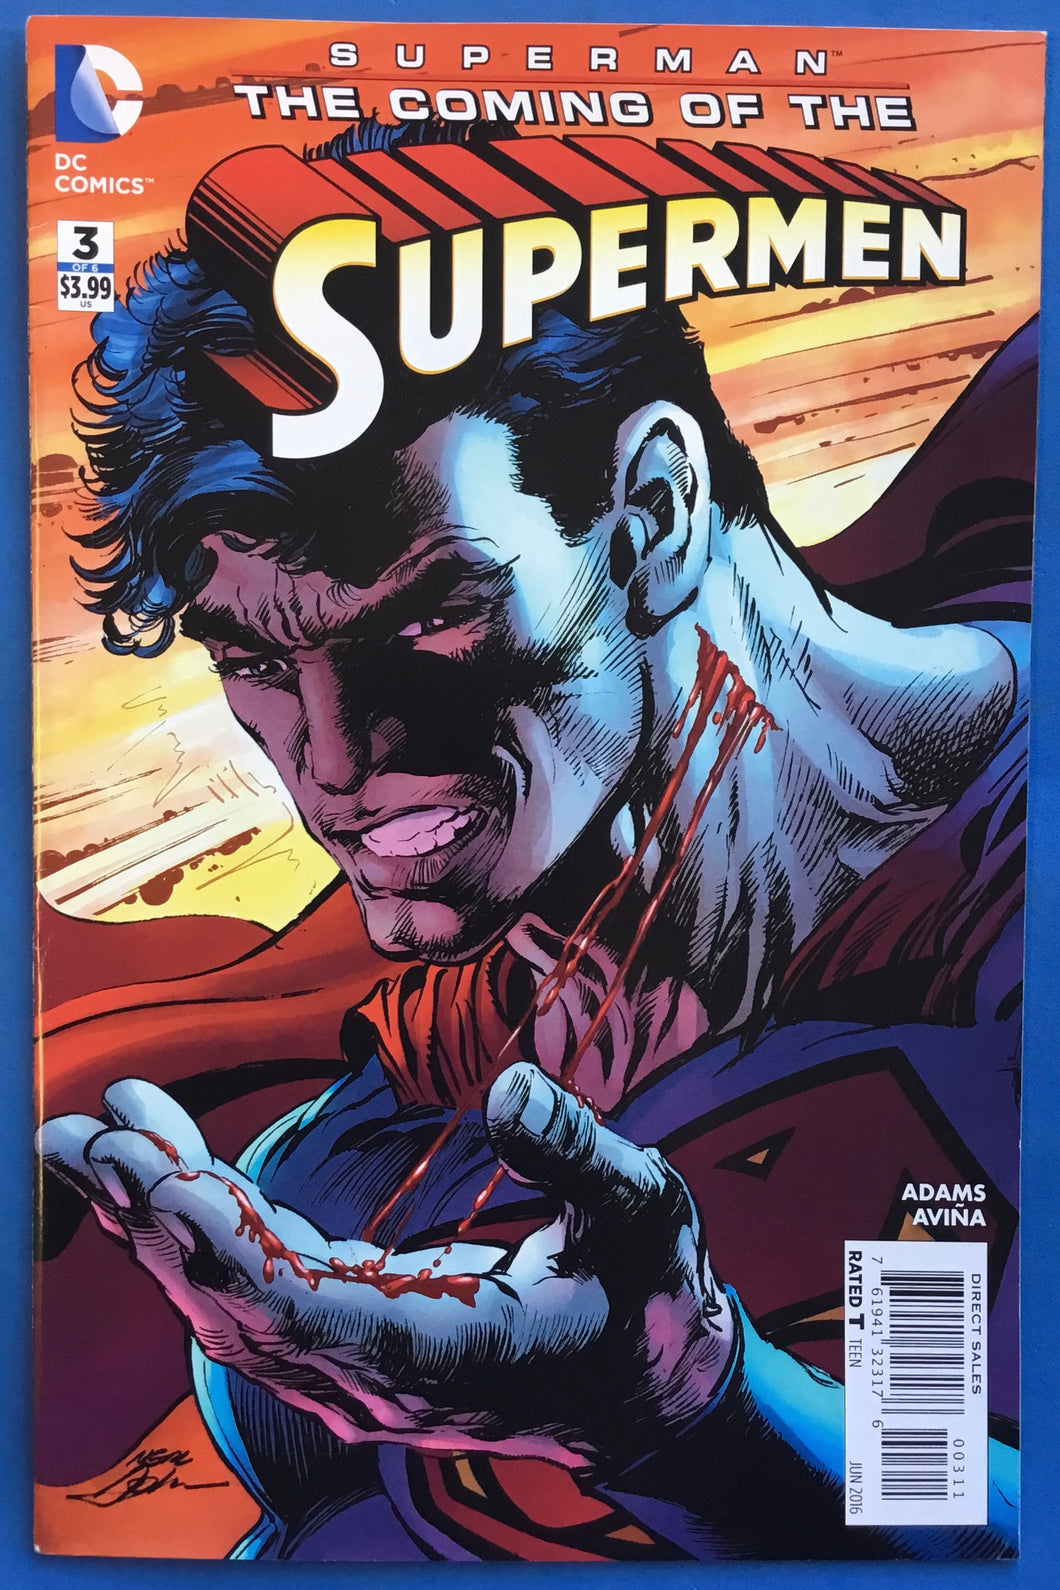 Superman: The Coming of the Supermen No. #3 2016 DC Comics